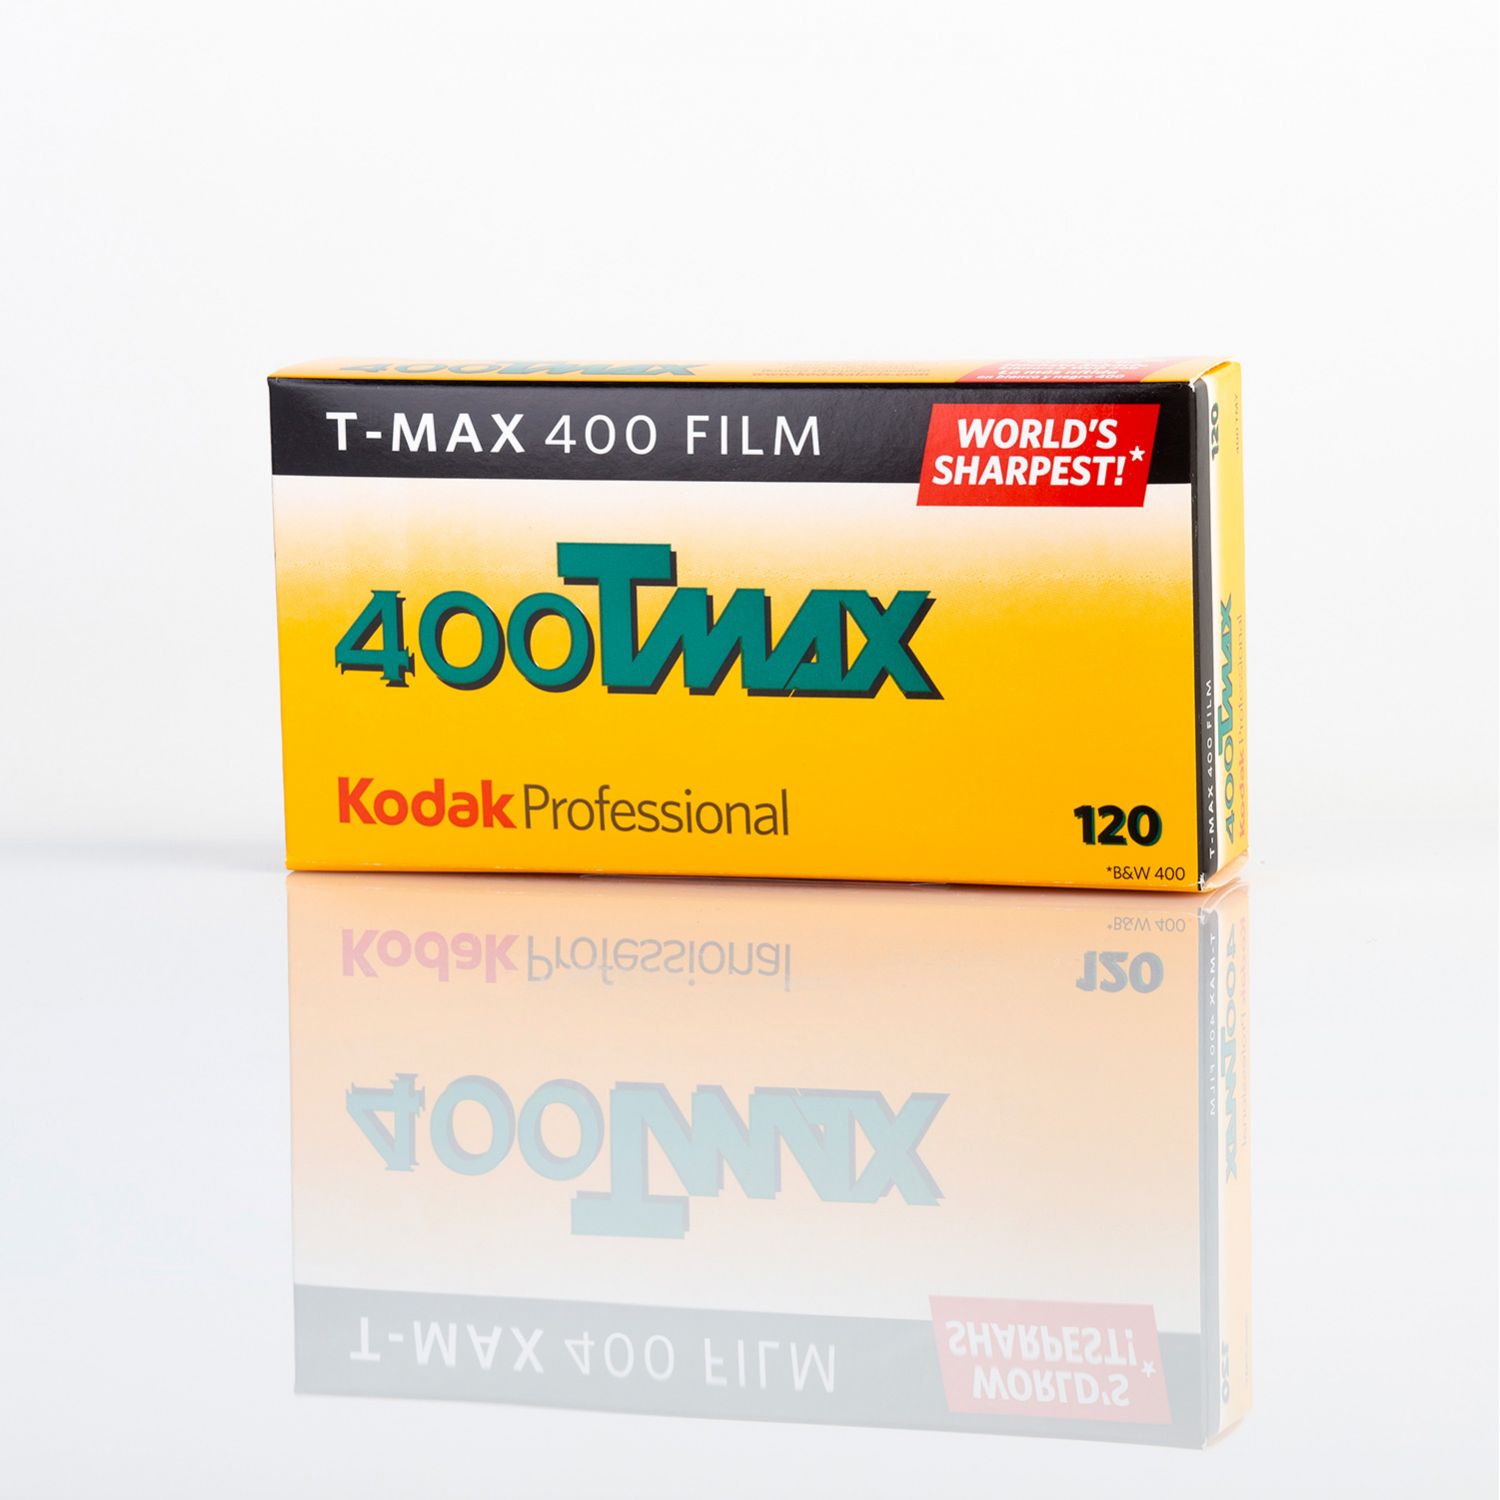 Kodak Kodak Professional T-Max 400 120 5 Films Mhd 09/2022 à Court Terme 